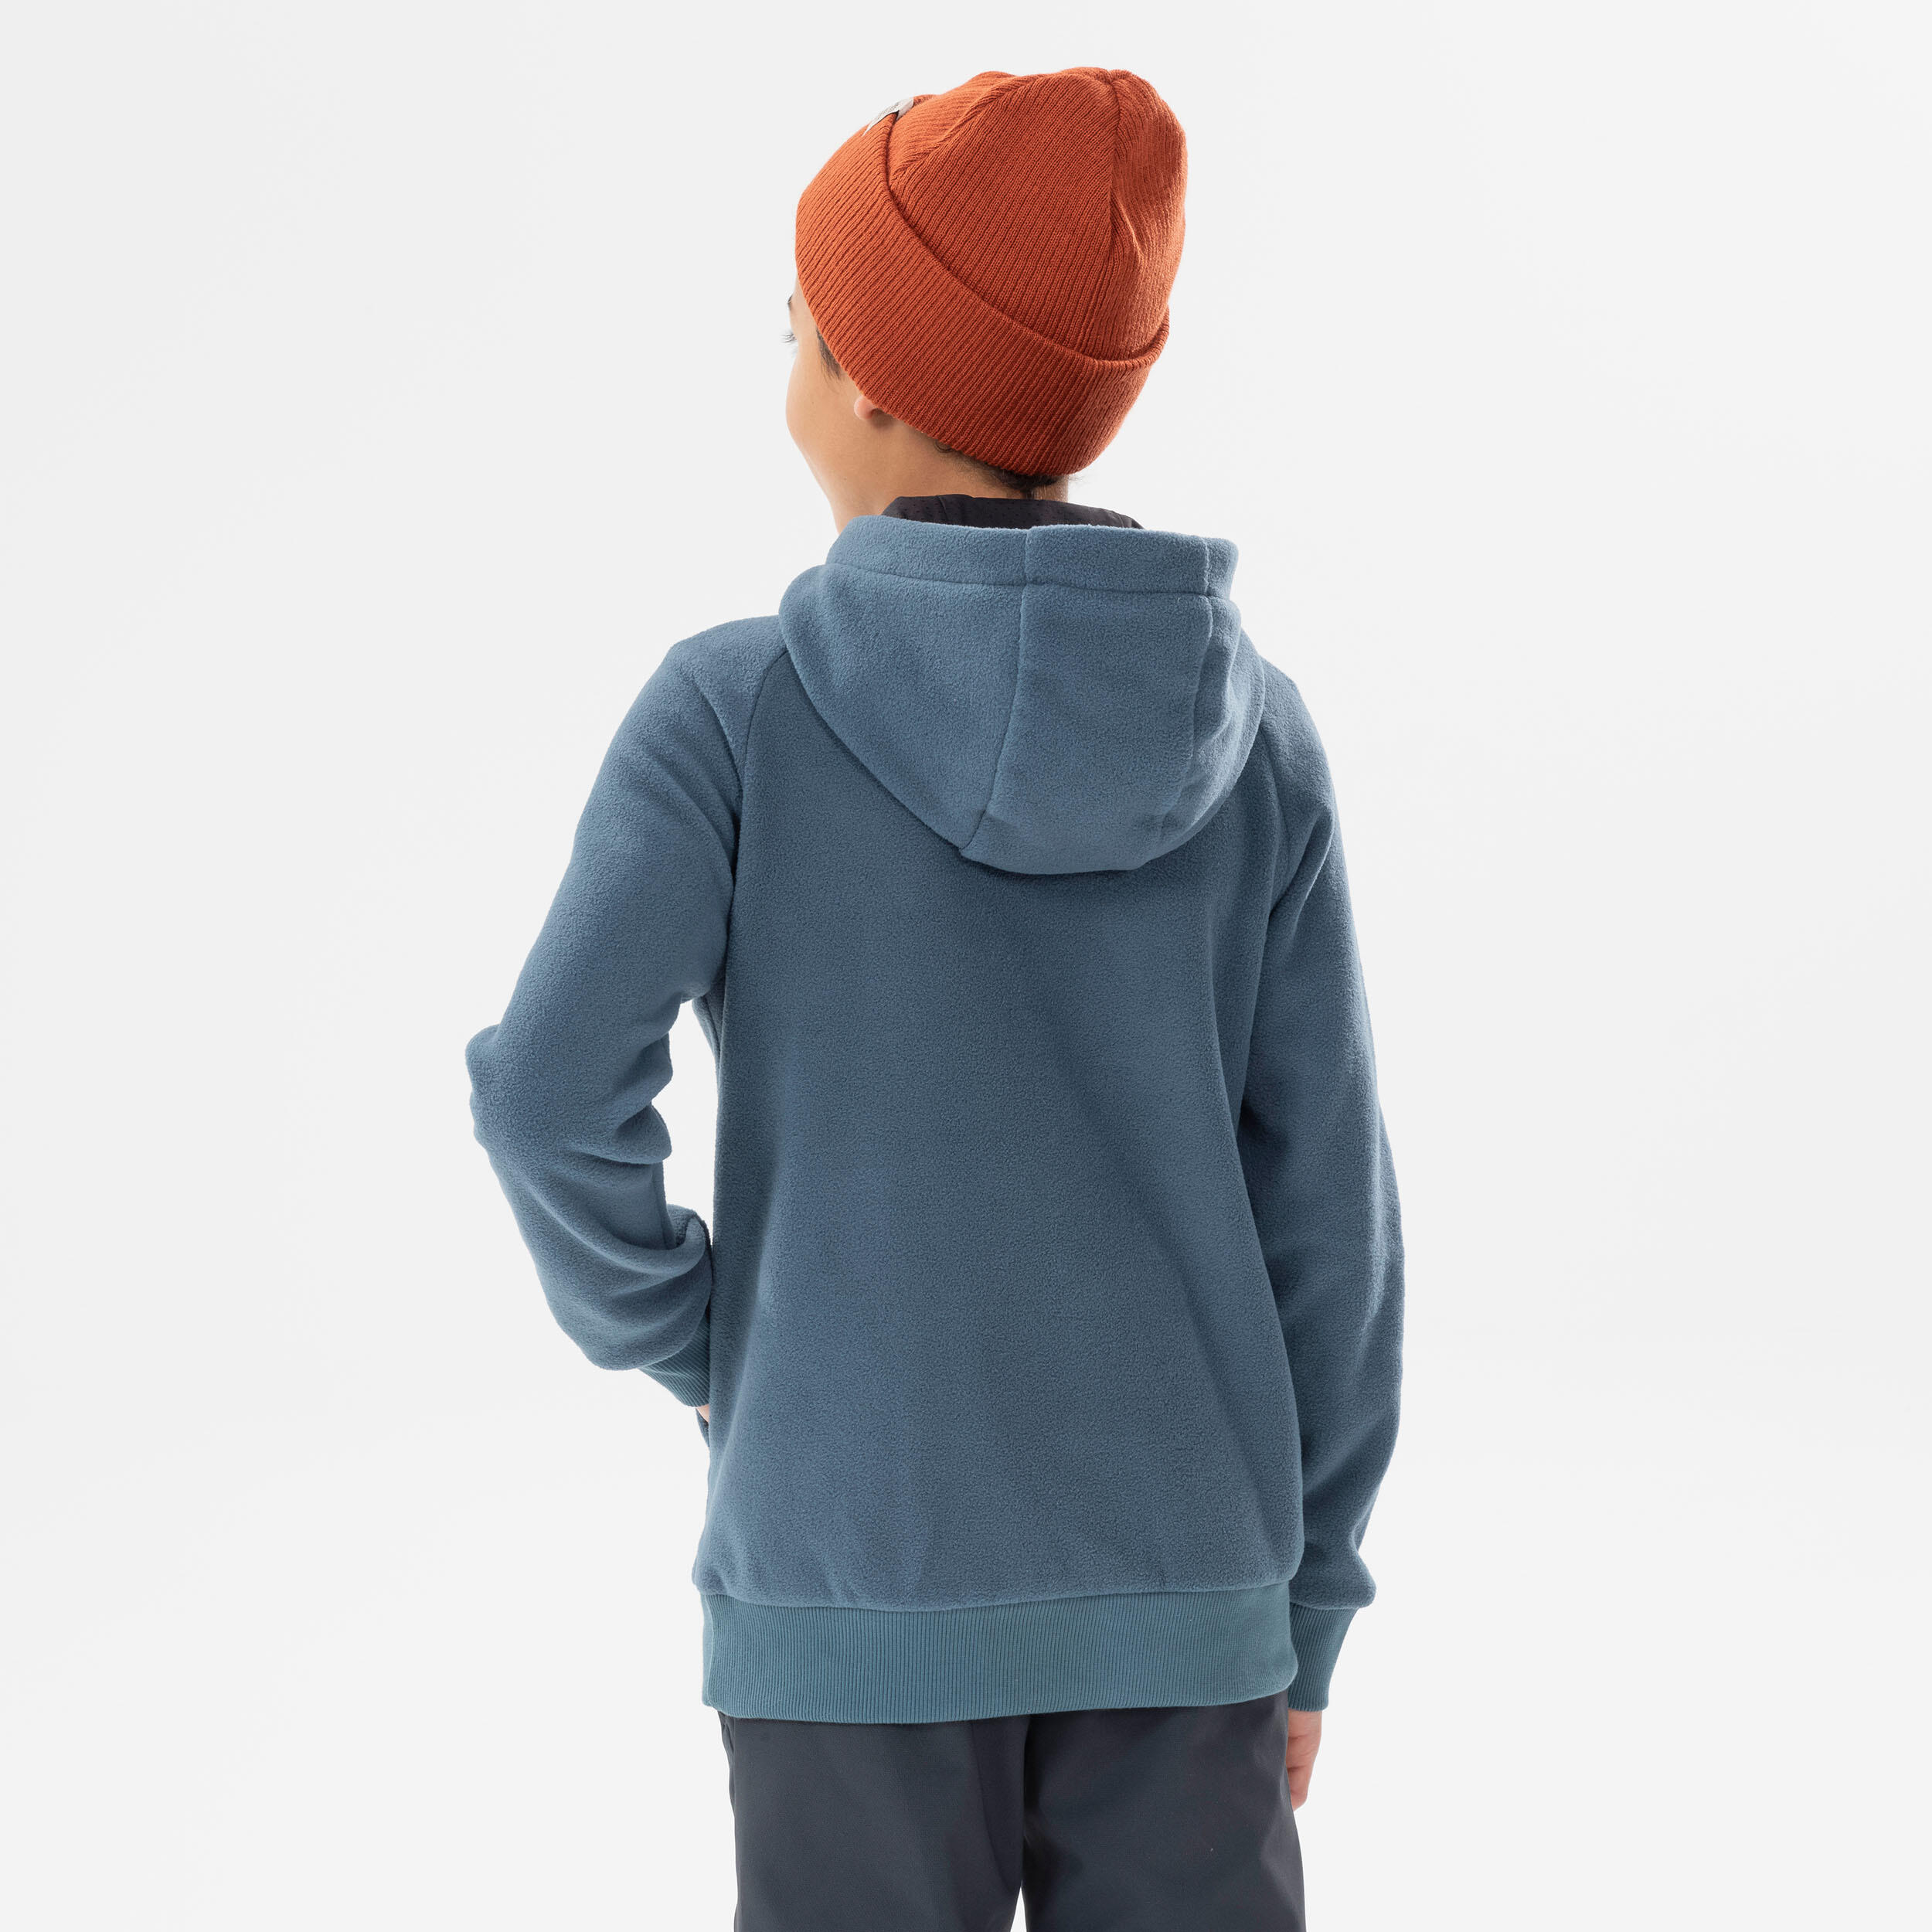 Boys’ Fleece Hiking Sweatshirt Aged 7-15 - Dark Grey 4/6